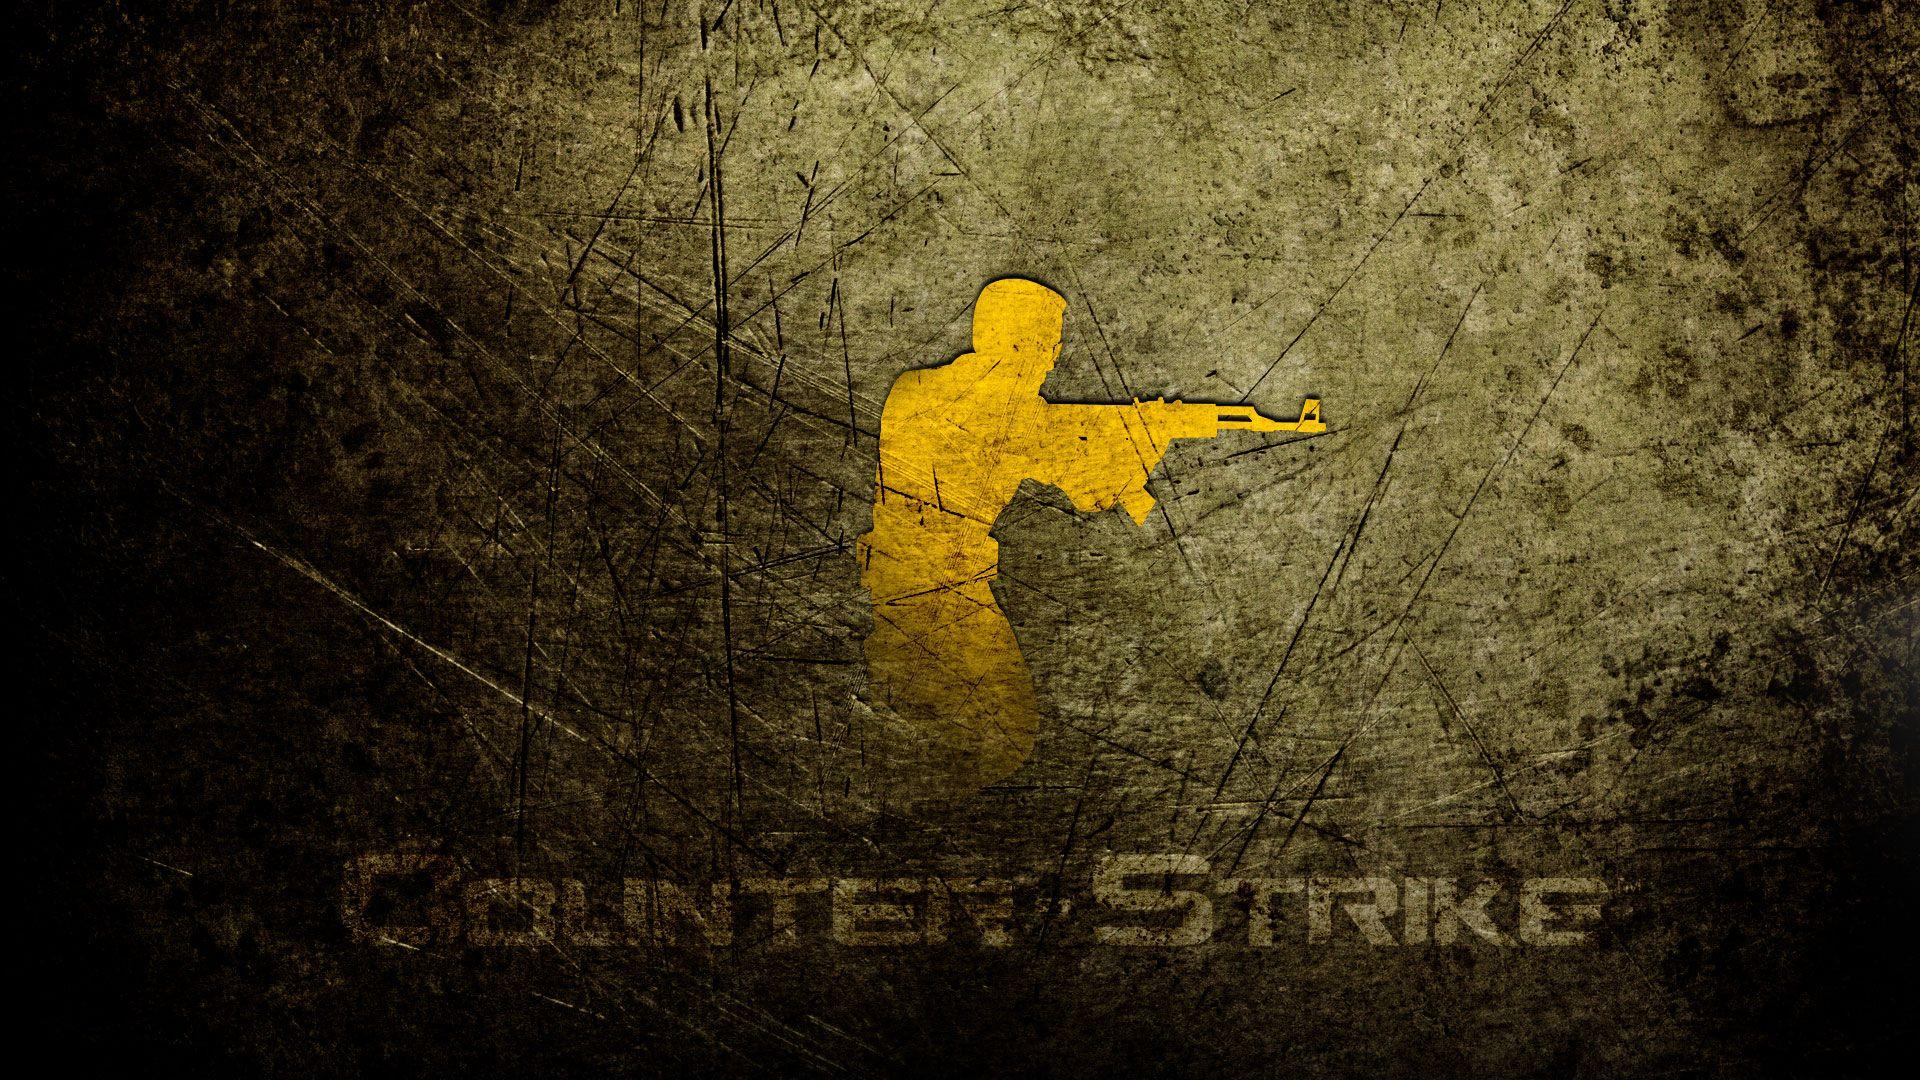 Counter Strike Wallpaper 31937 1920x1080 px